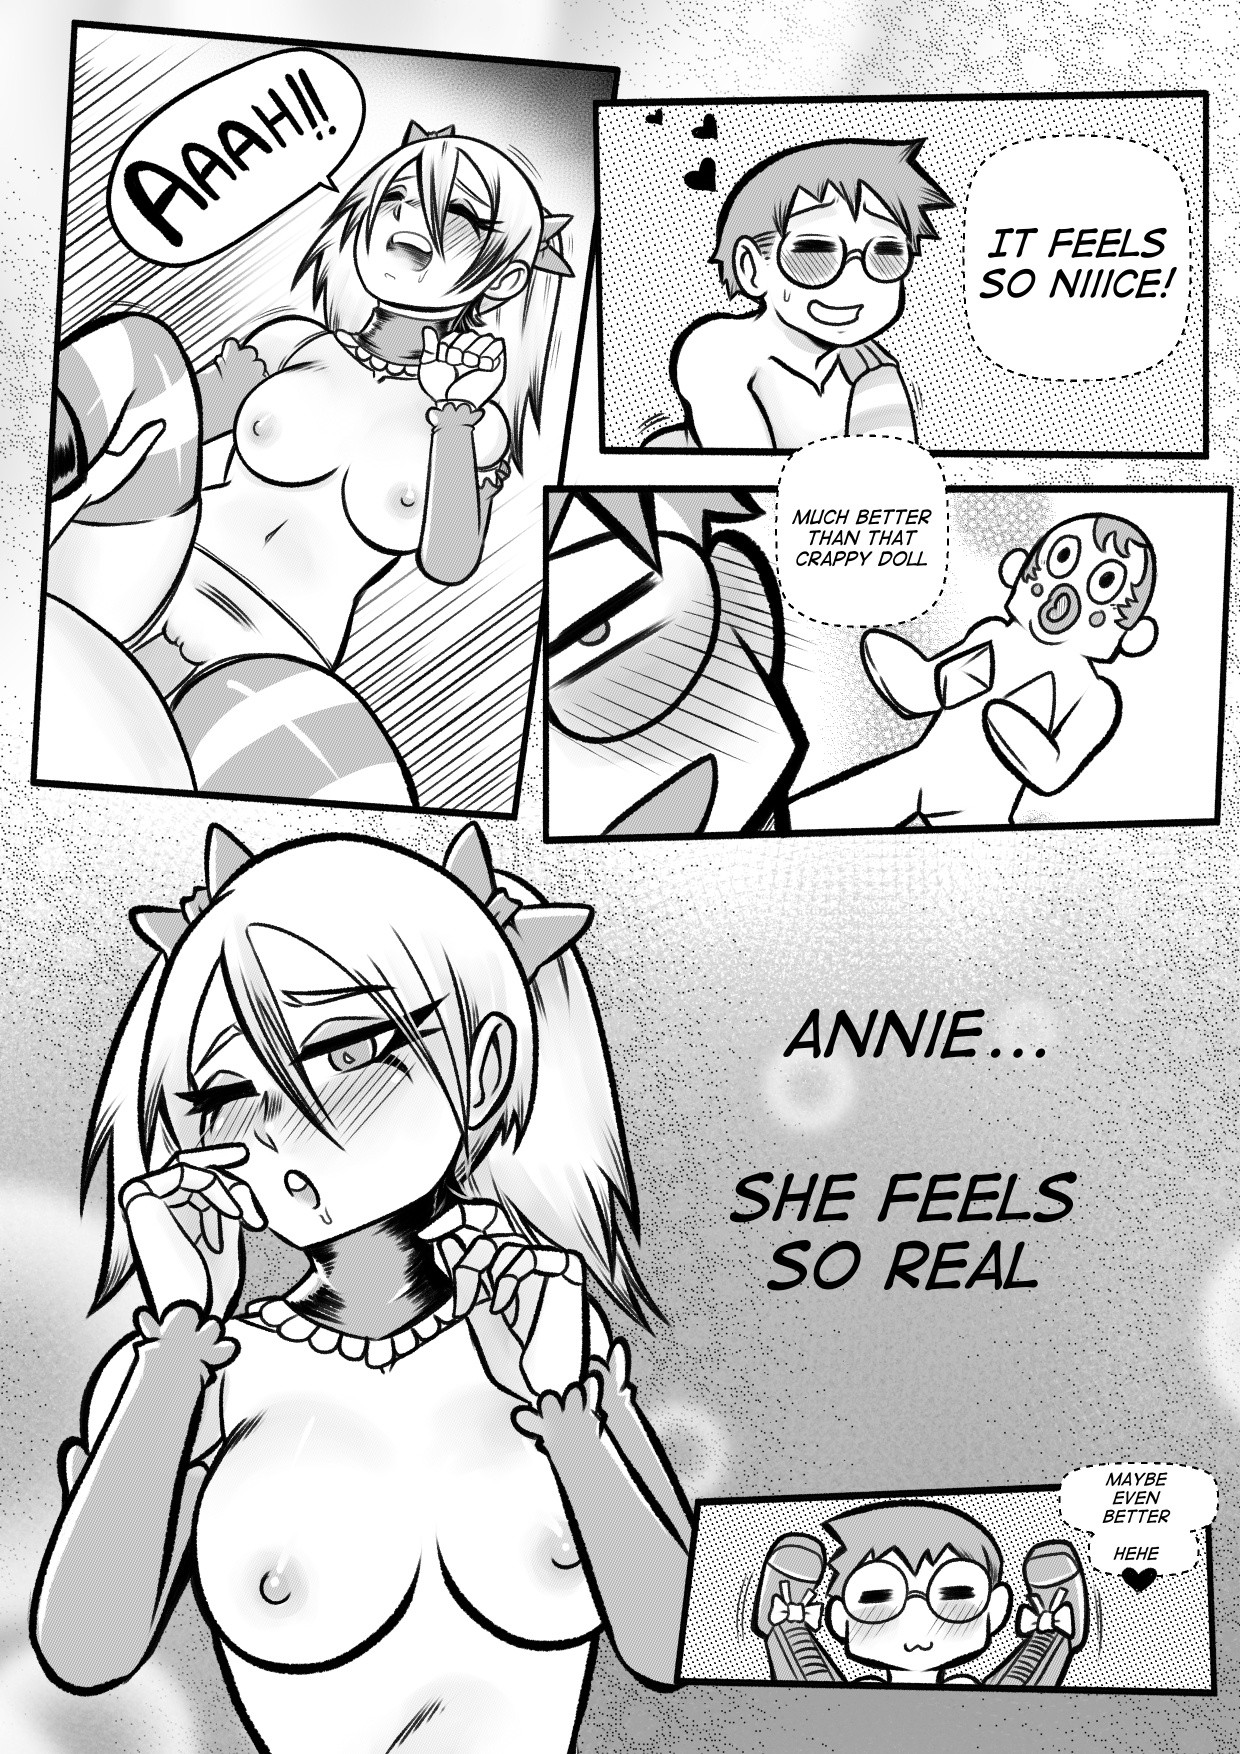 Annie porn comic picture 40